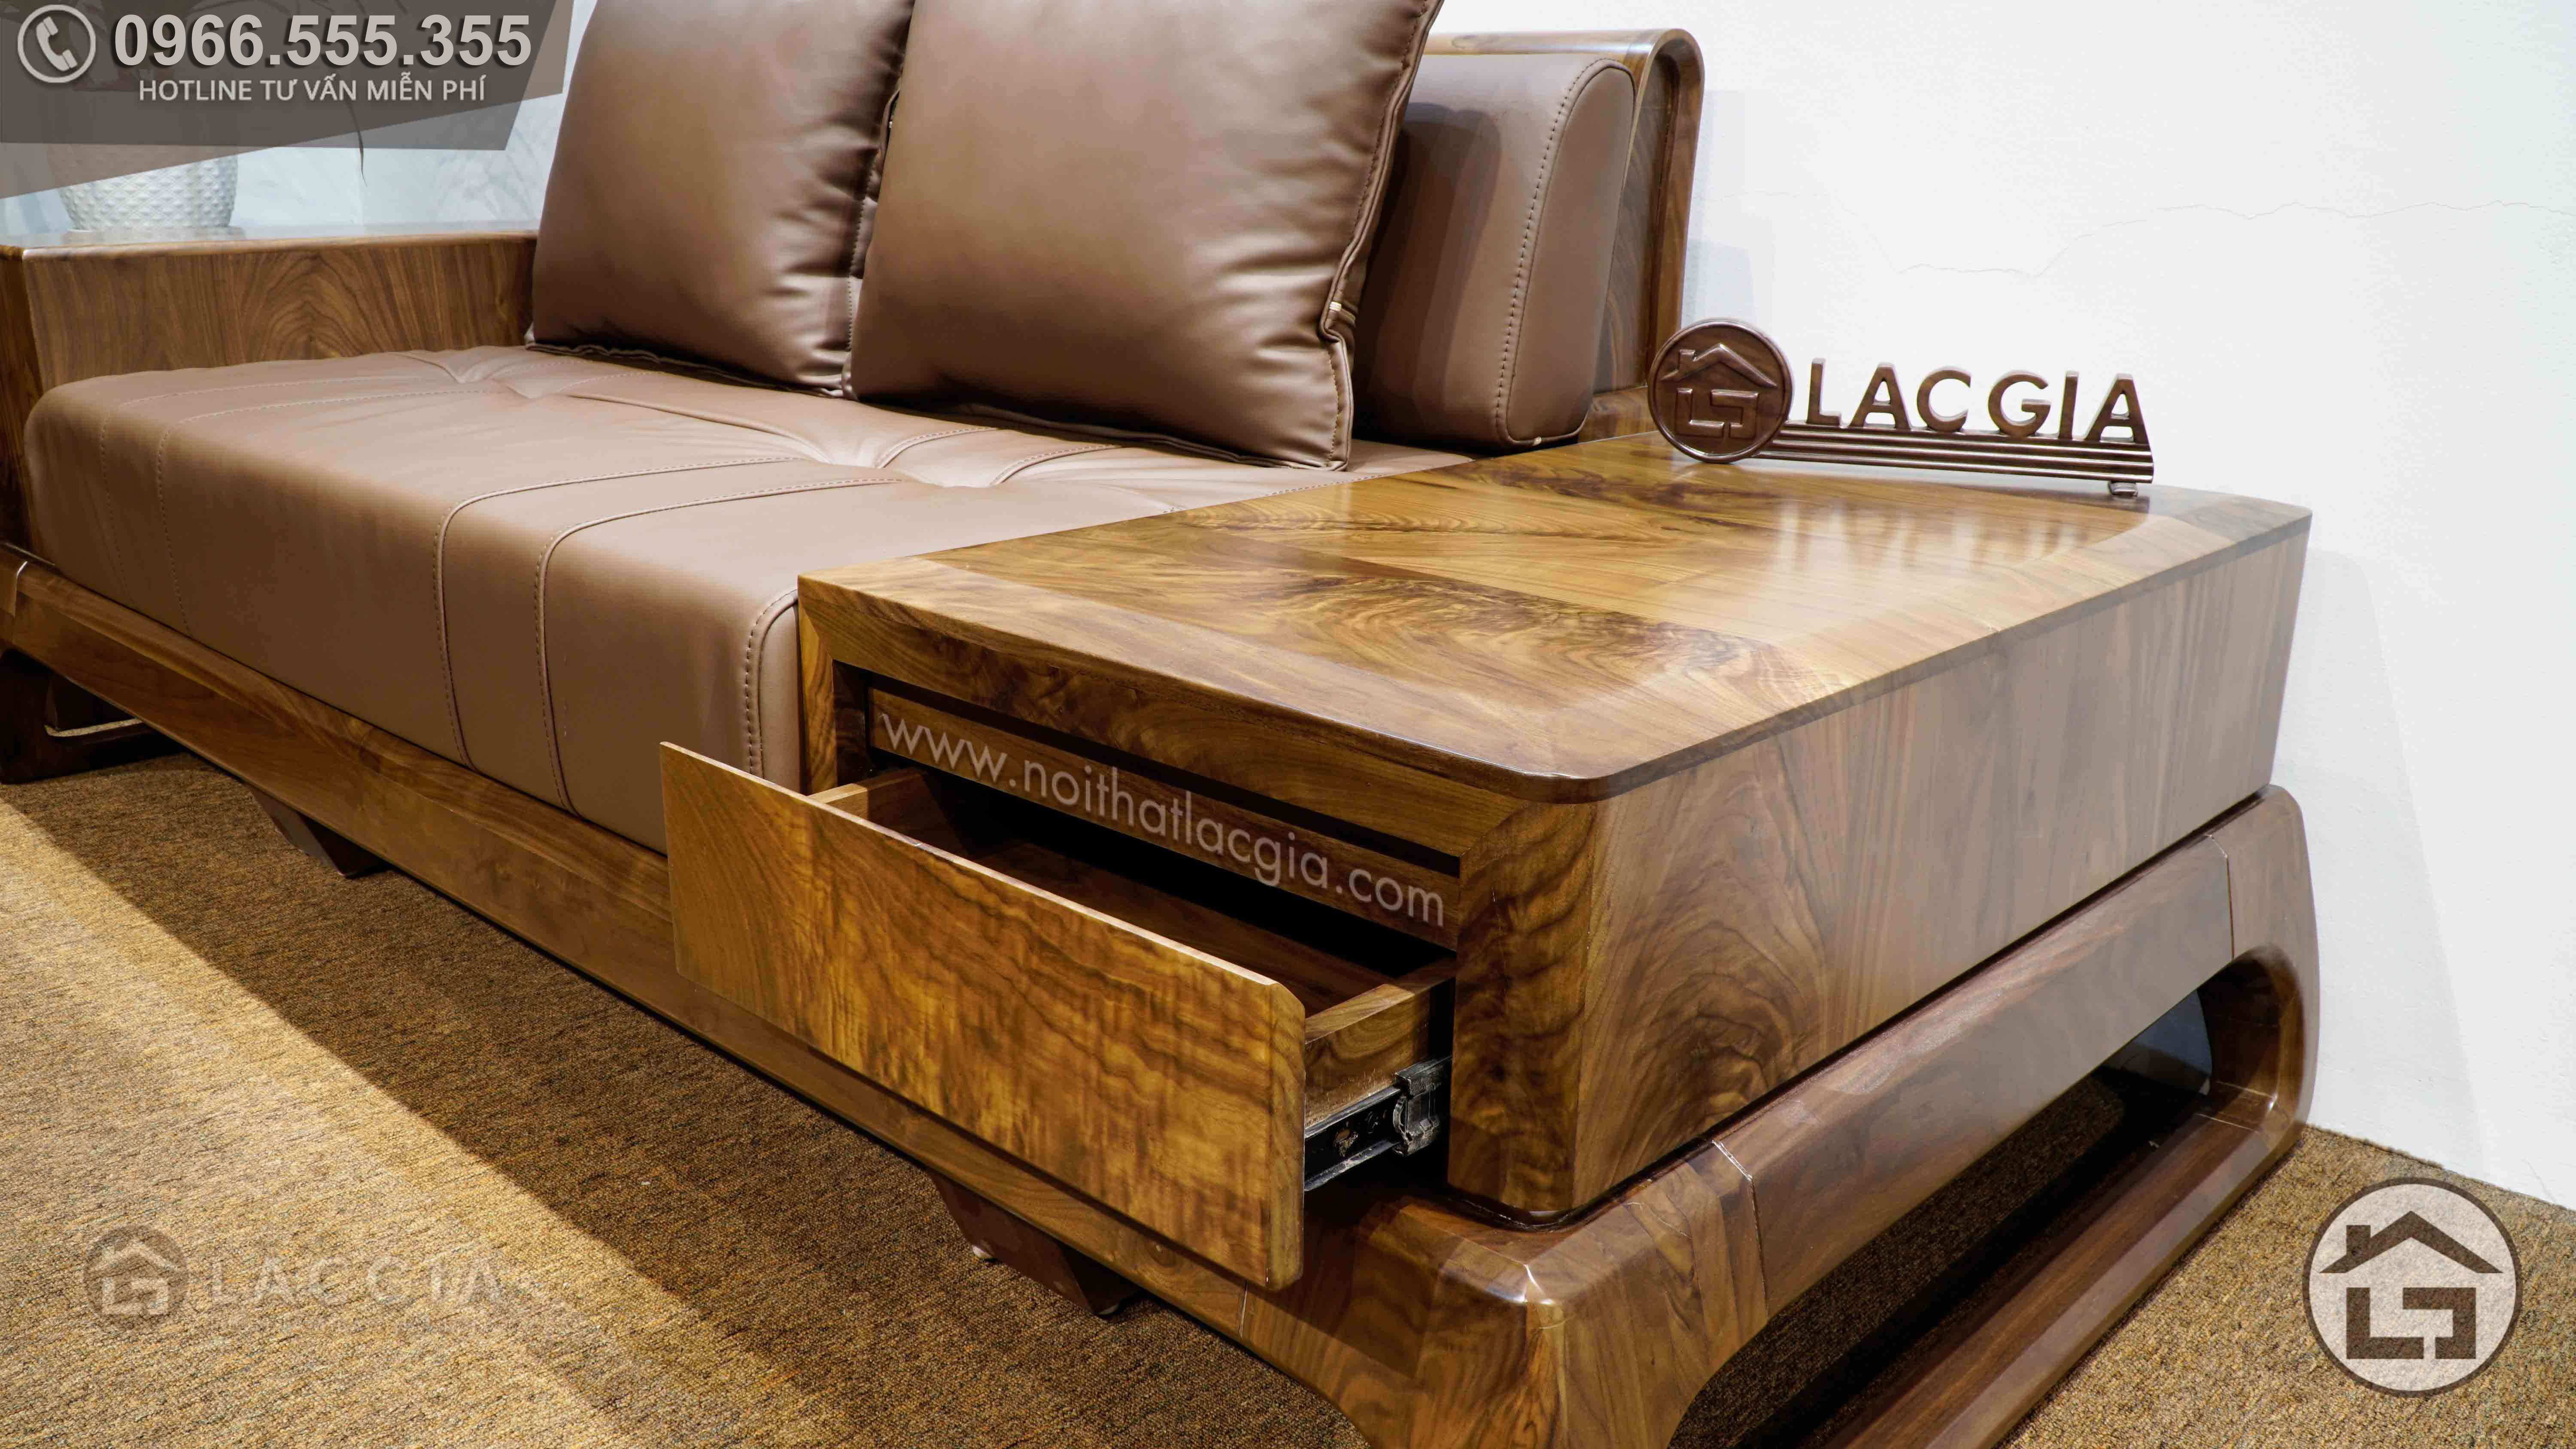 Sofa gỗ chữ L - và những thông tin mà bạn không nên bỏ qua